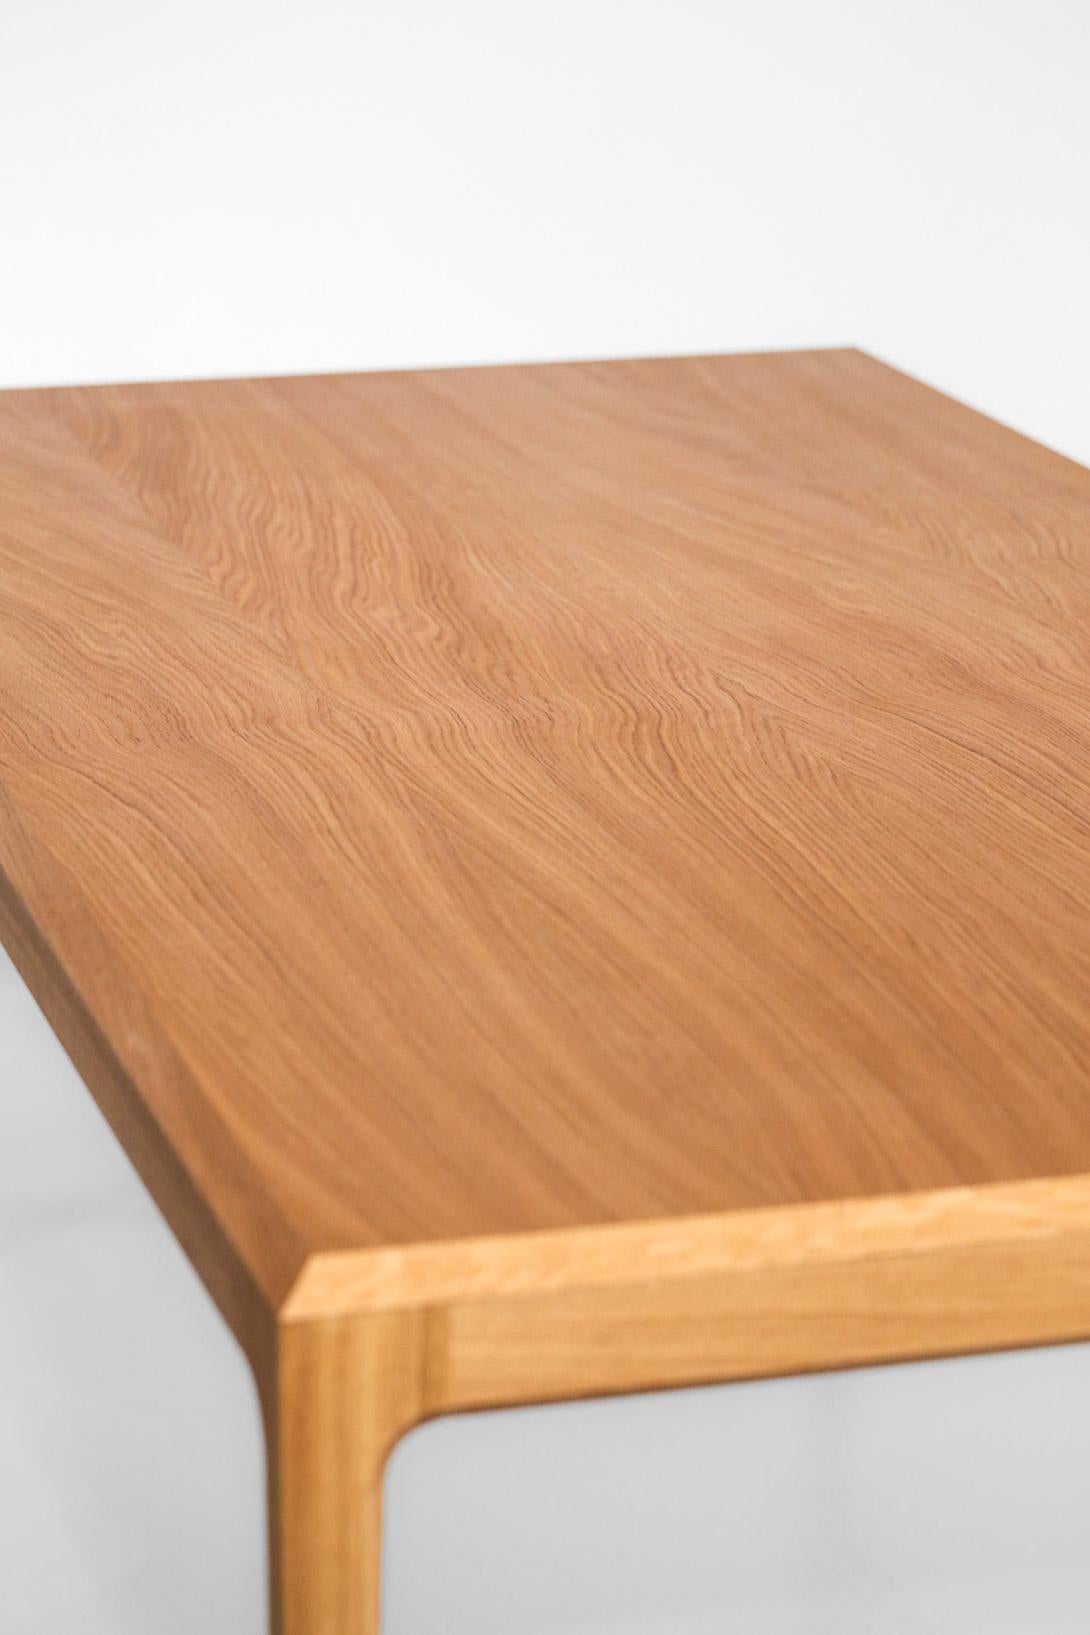 Large Modern Table in Oak Scandinavian Design 1